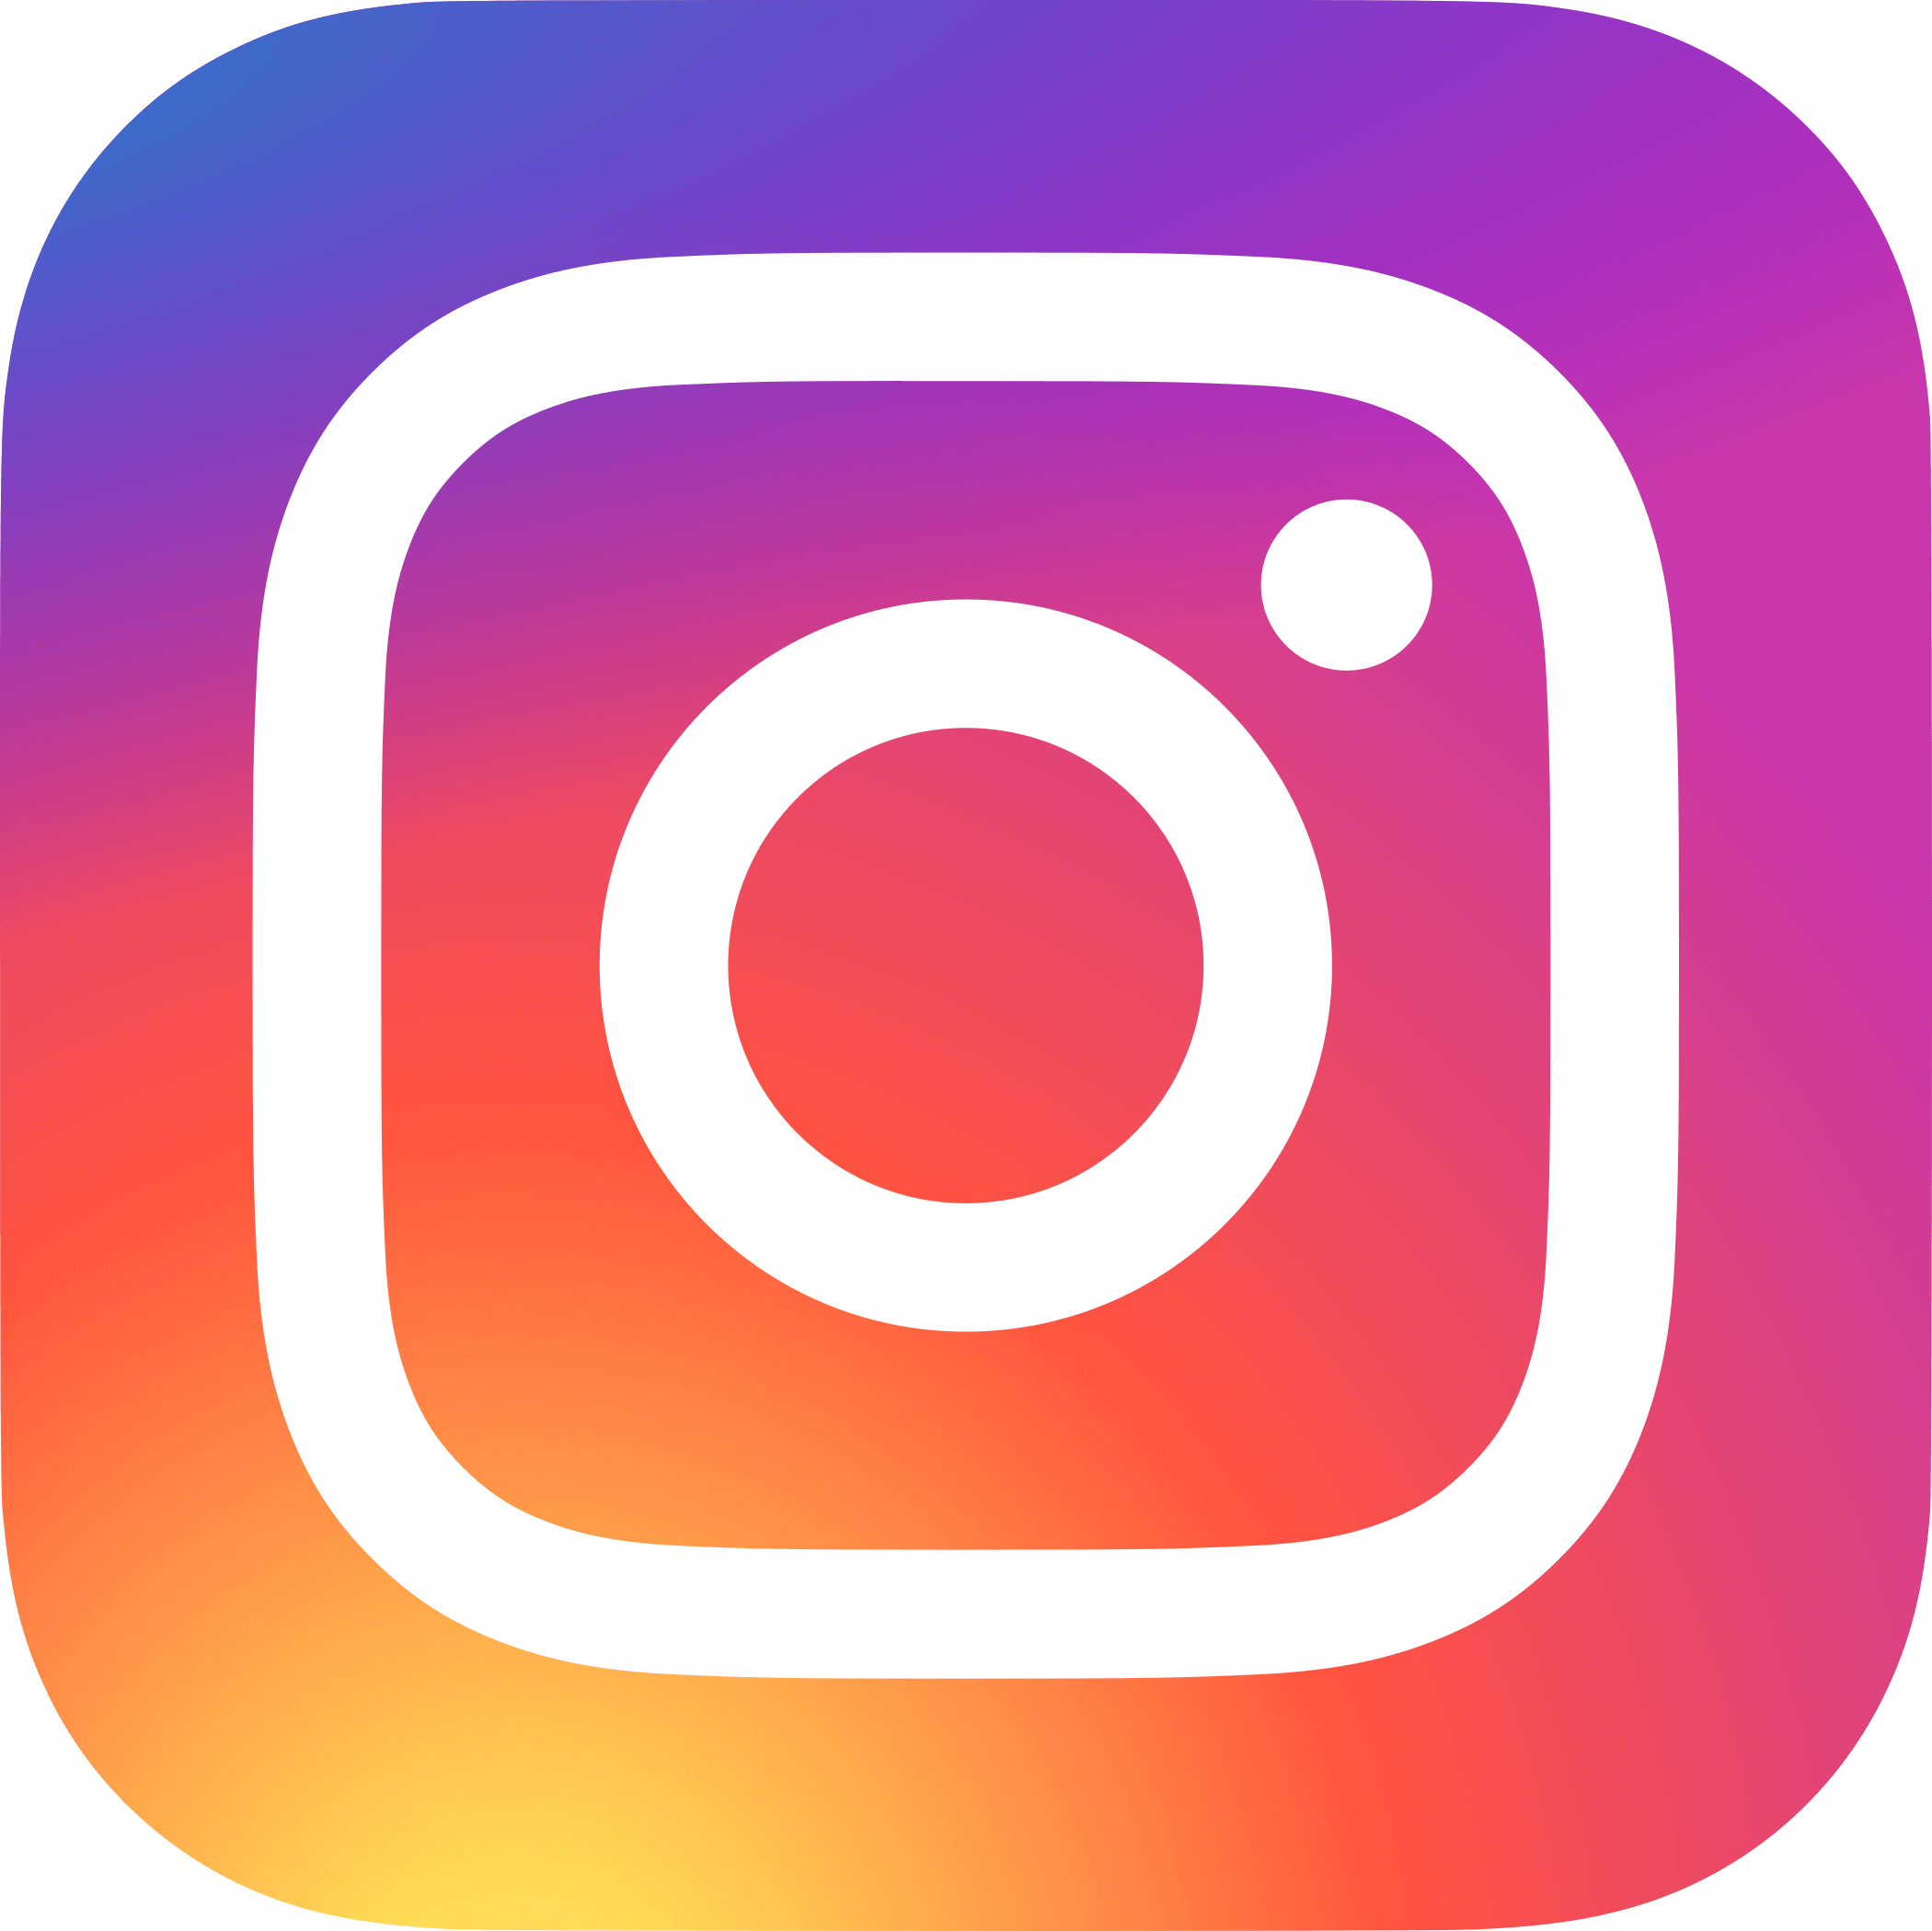 Como funciona no instagram?